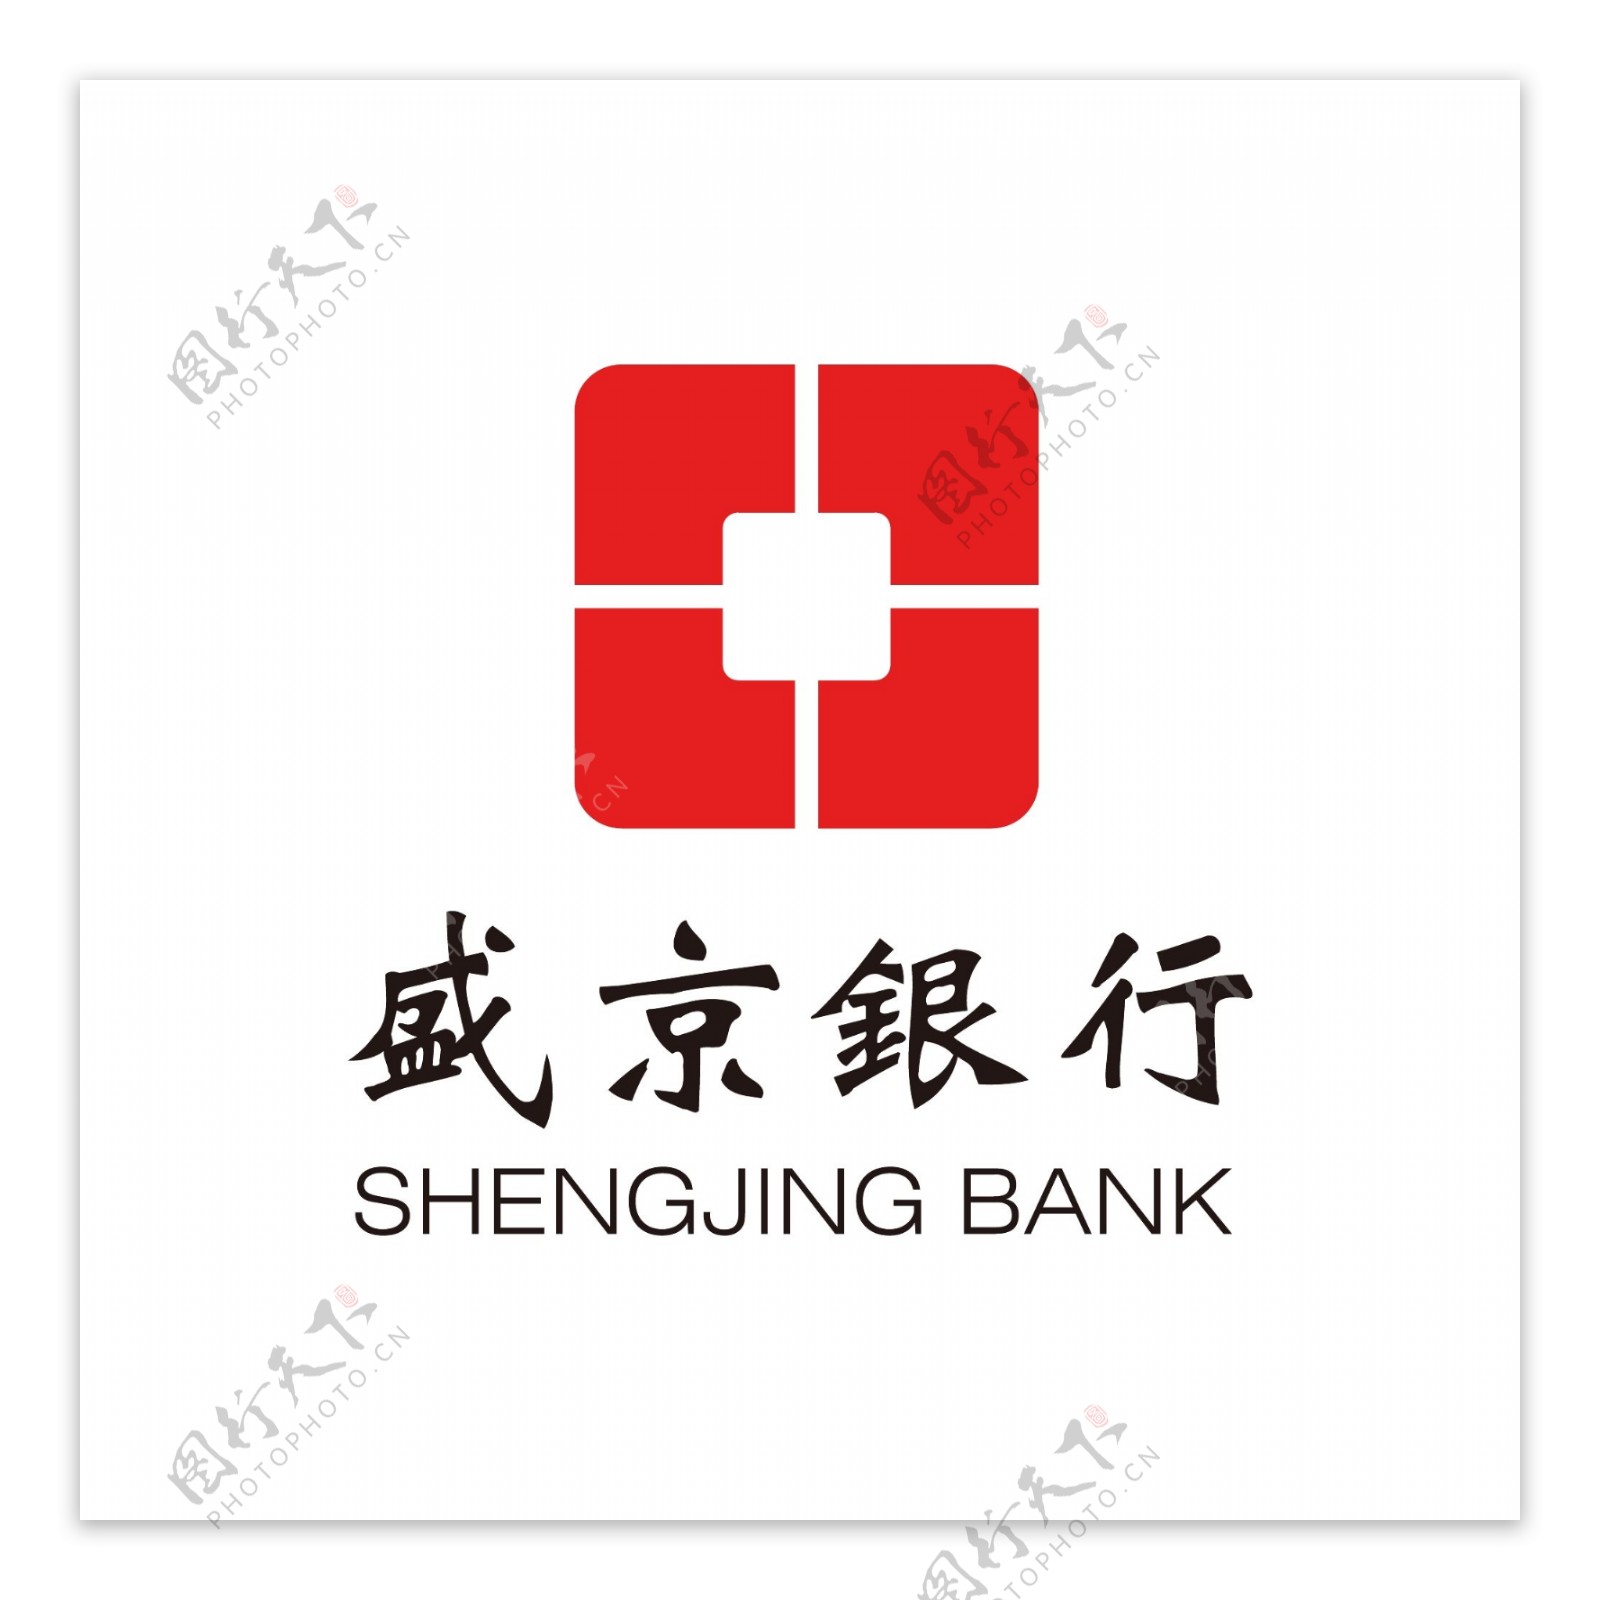 盛京银行标志